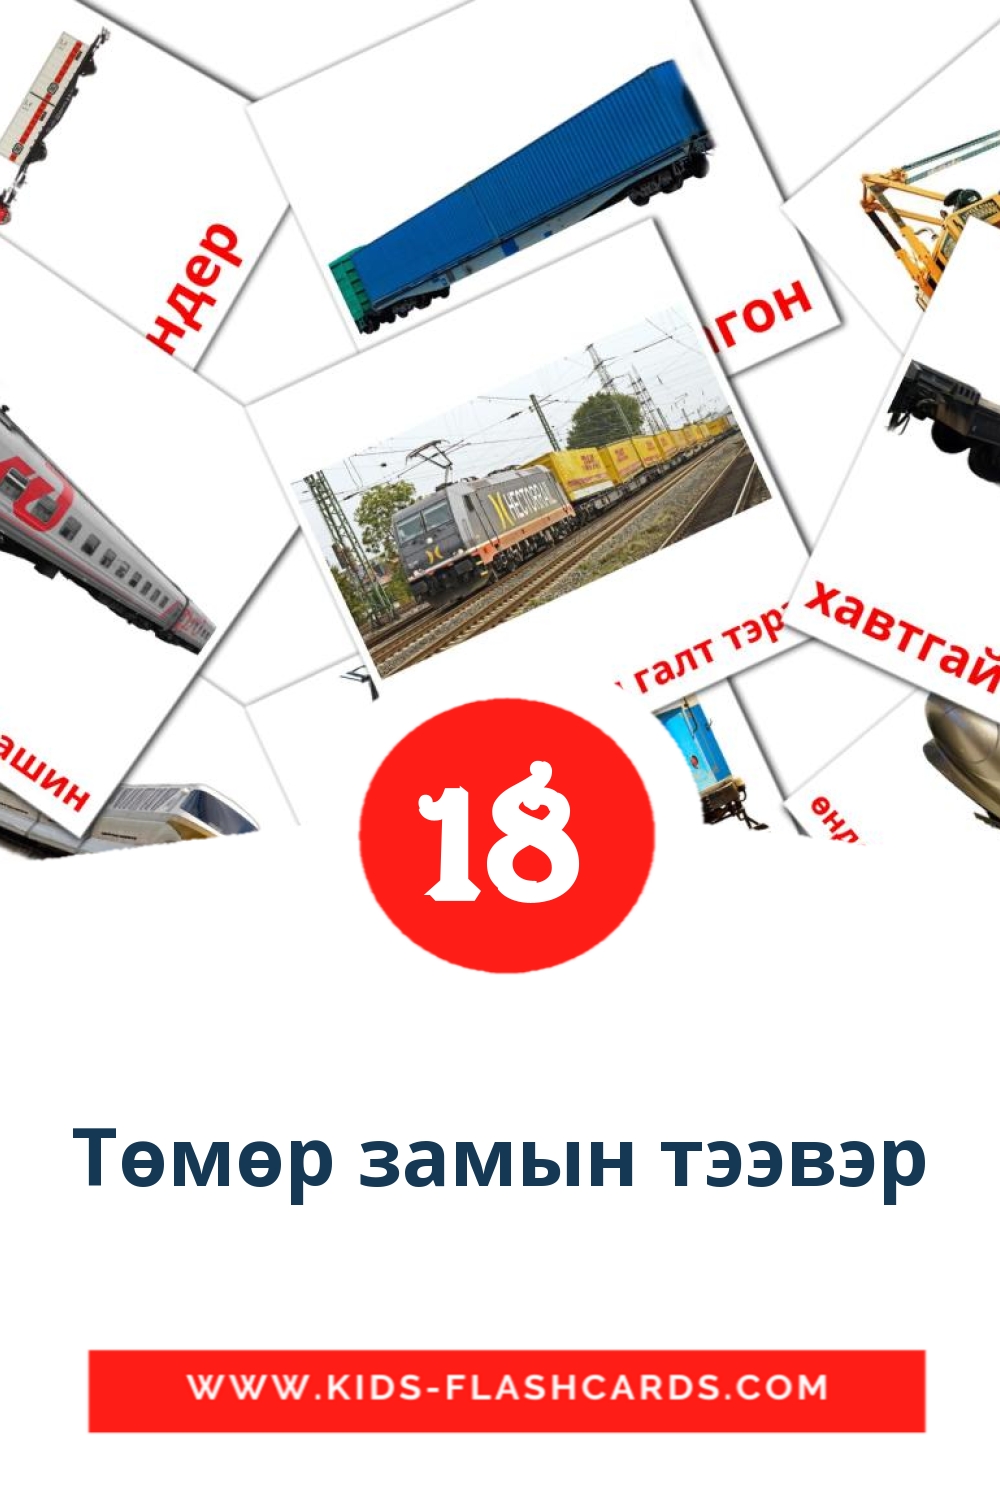 18 tarjetas didacticas de Төмөр замын тээвэр para el jardín de infancia en mongol